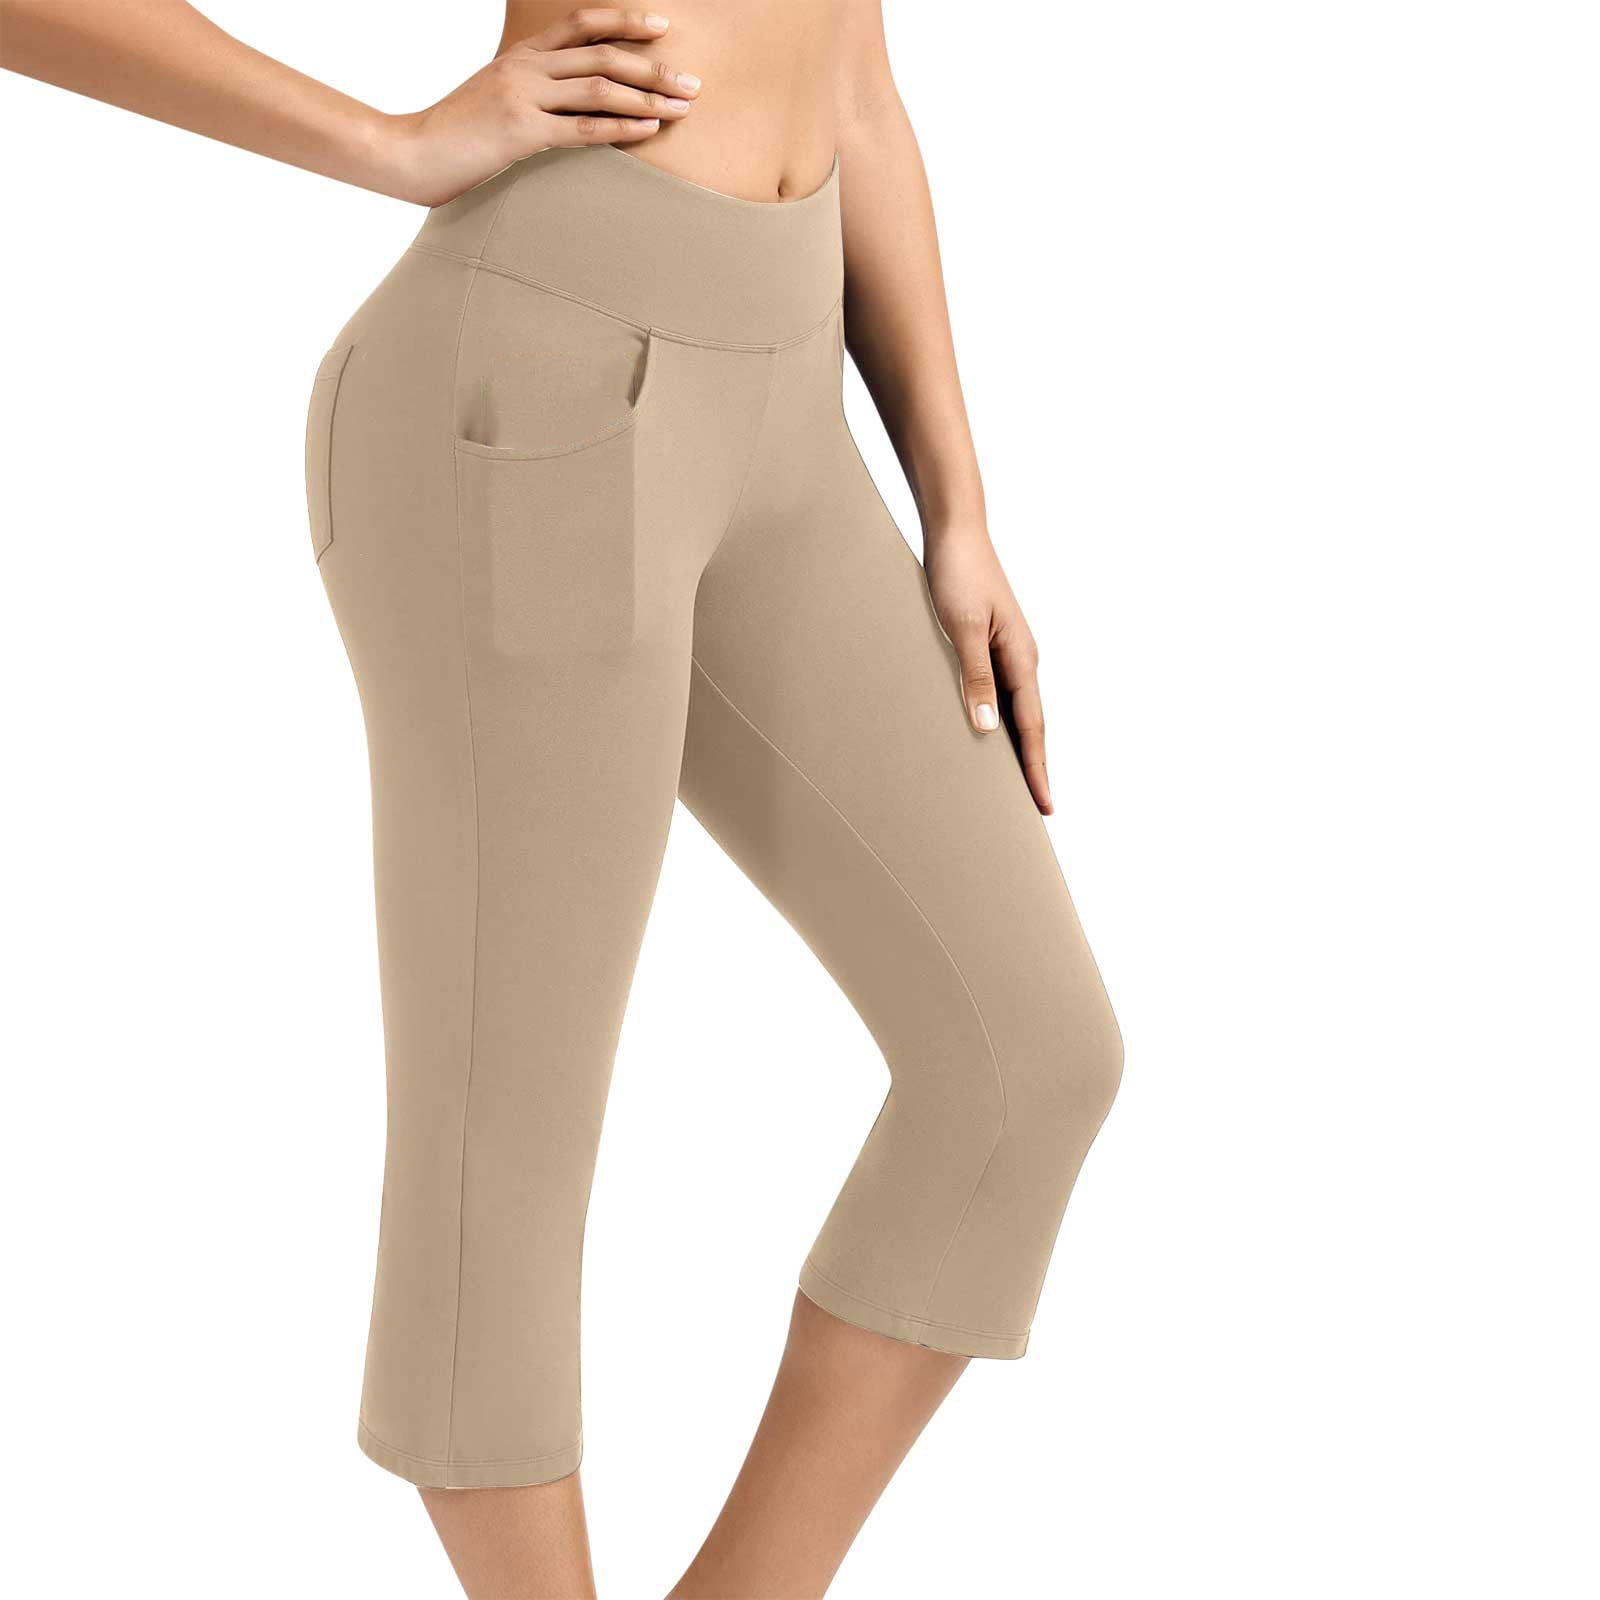 Mrat Womens Loose Trouser Casual Yoga Capris Pants Ladies Knee